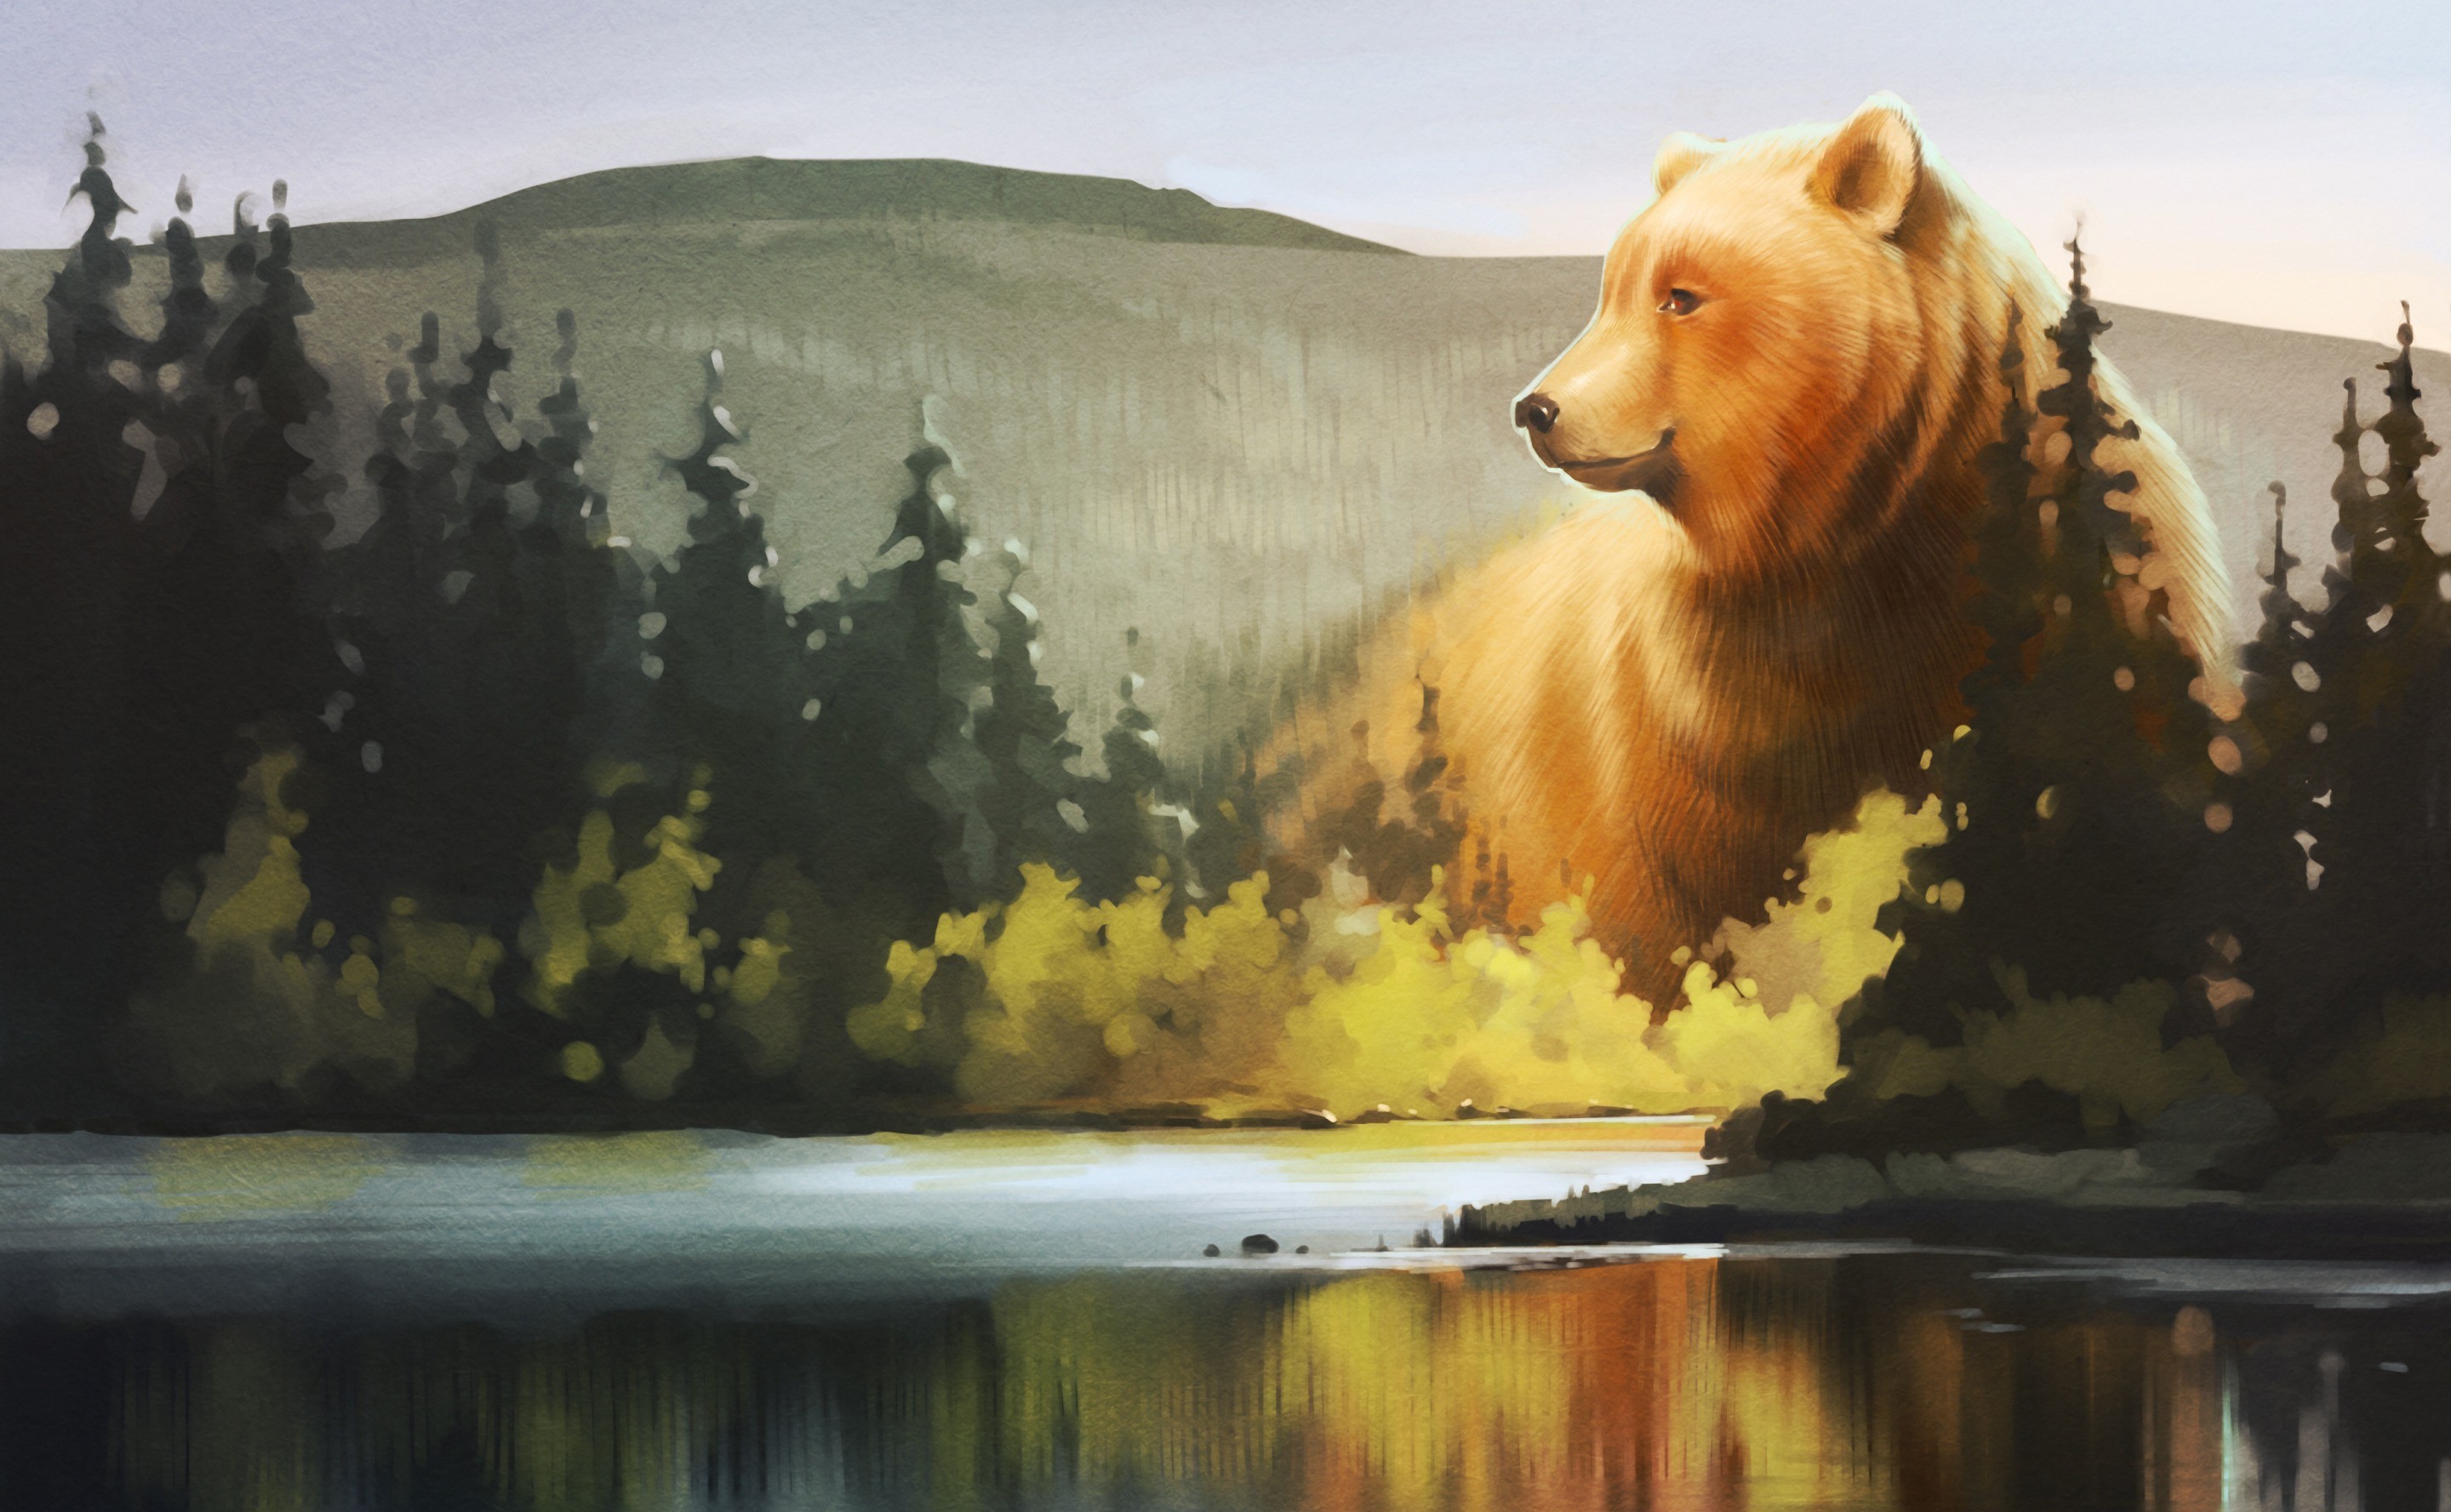 Скачать обои бесплатно Медведи, Медведь, Животные картинка на рабочий стол ПК